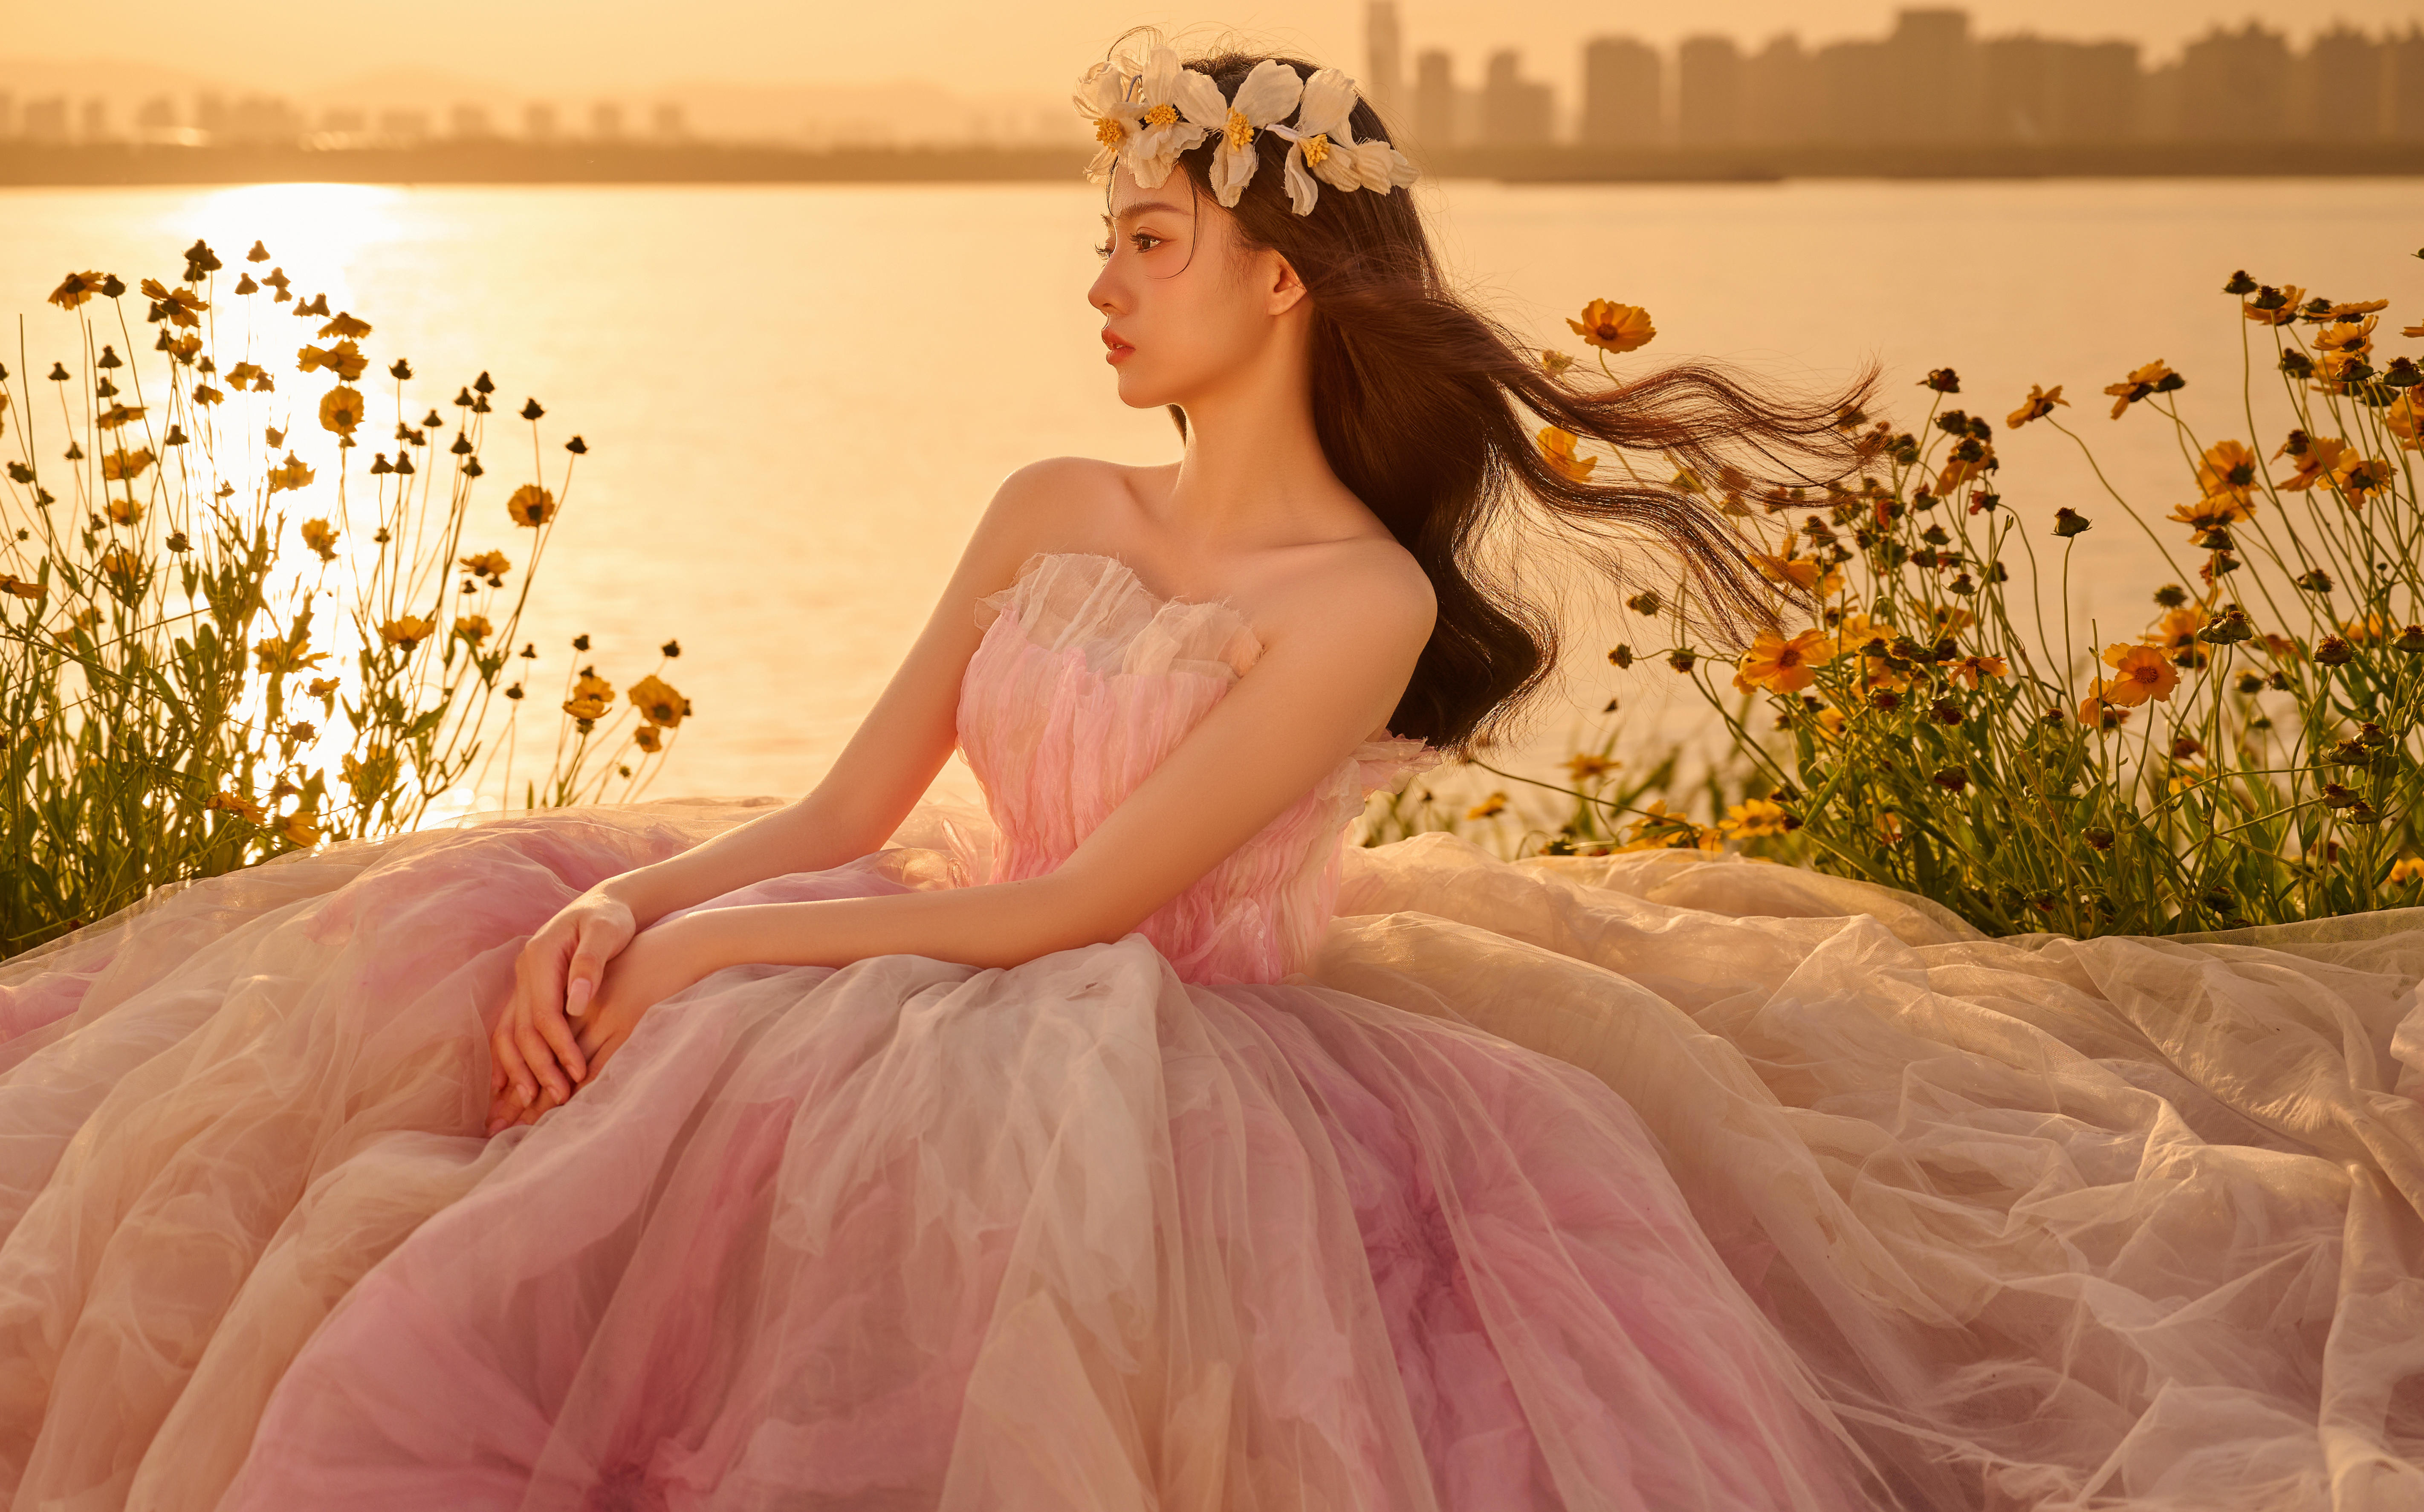 【雪彩客片】请看公主的氛围感江景婚纱照🍂拿捏